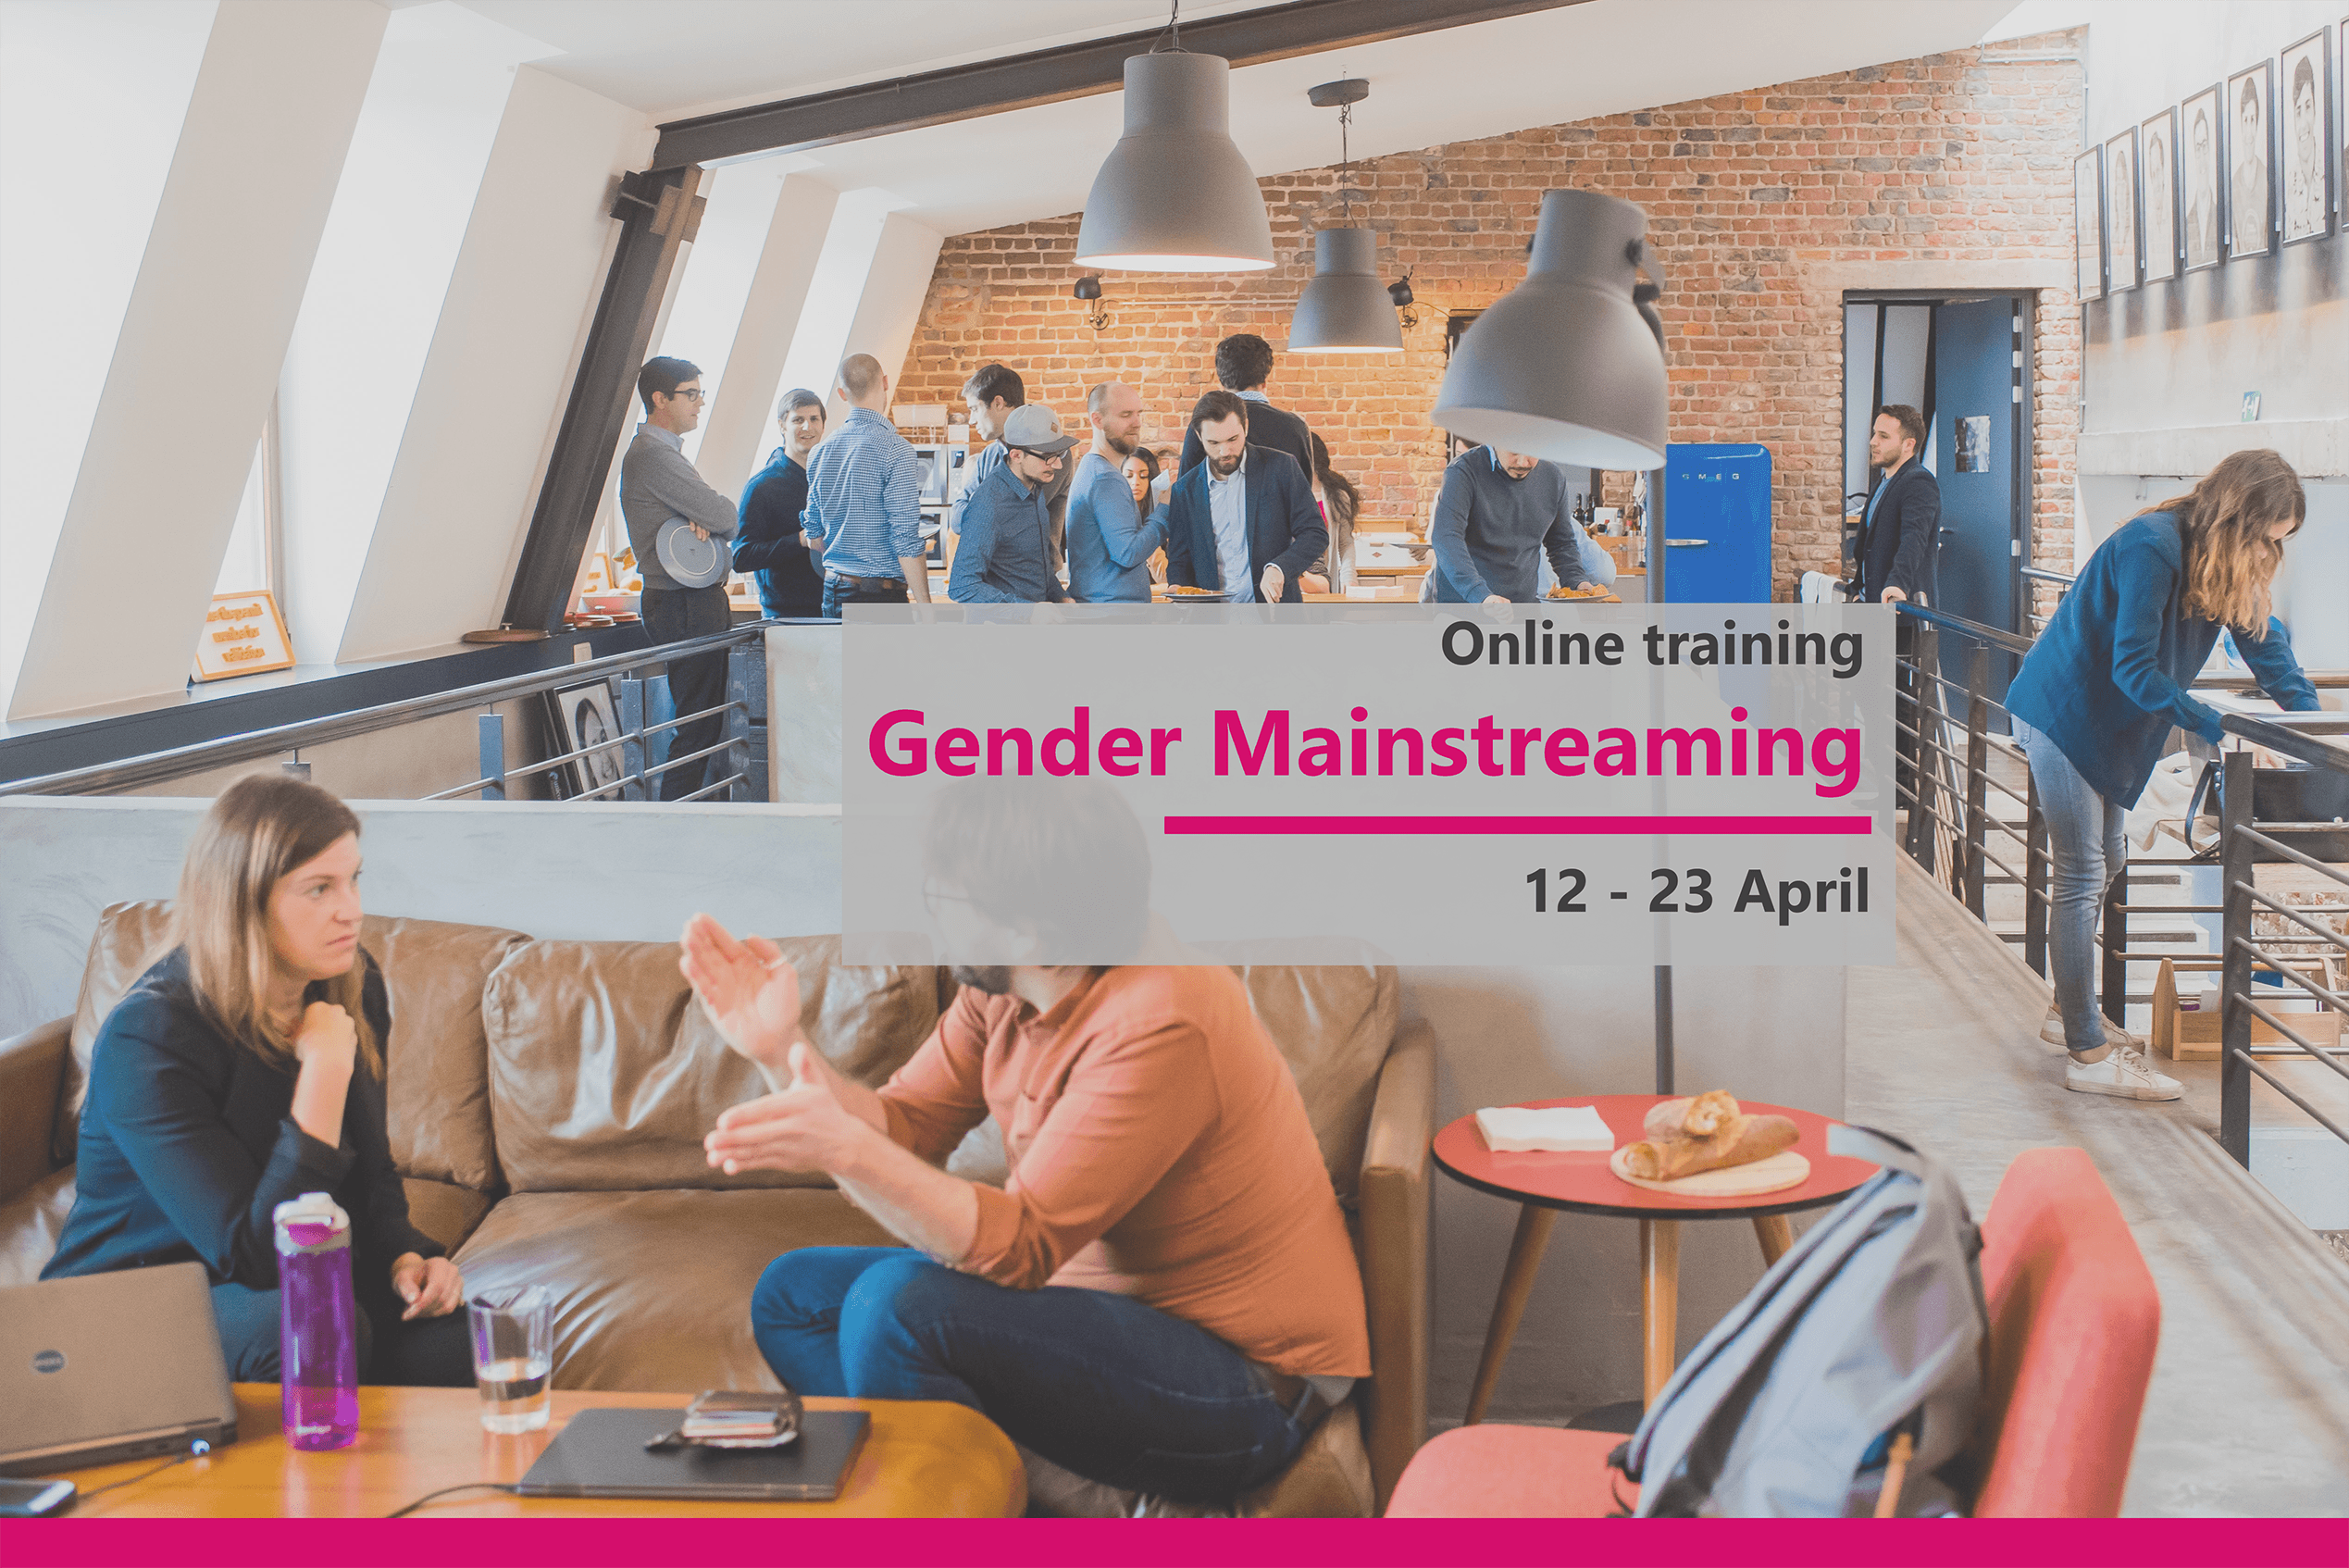 Online training course “Gender Mainstreaming” 12 – 23 April 2021, Online, Netherlands